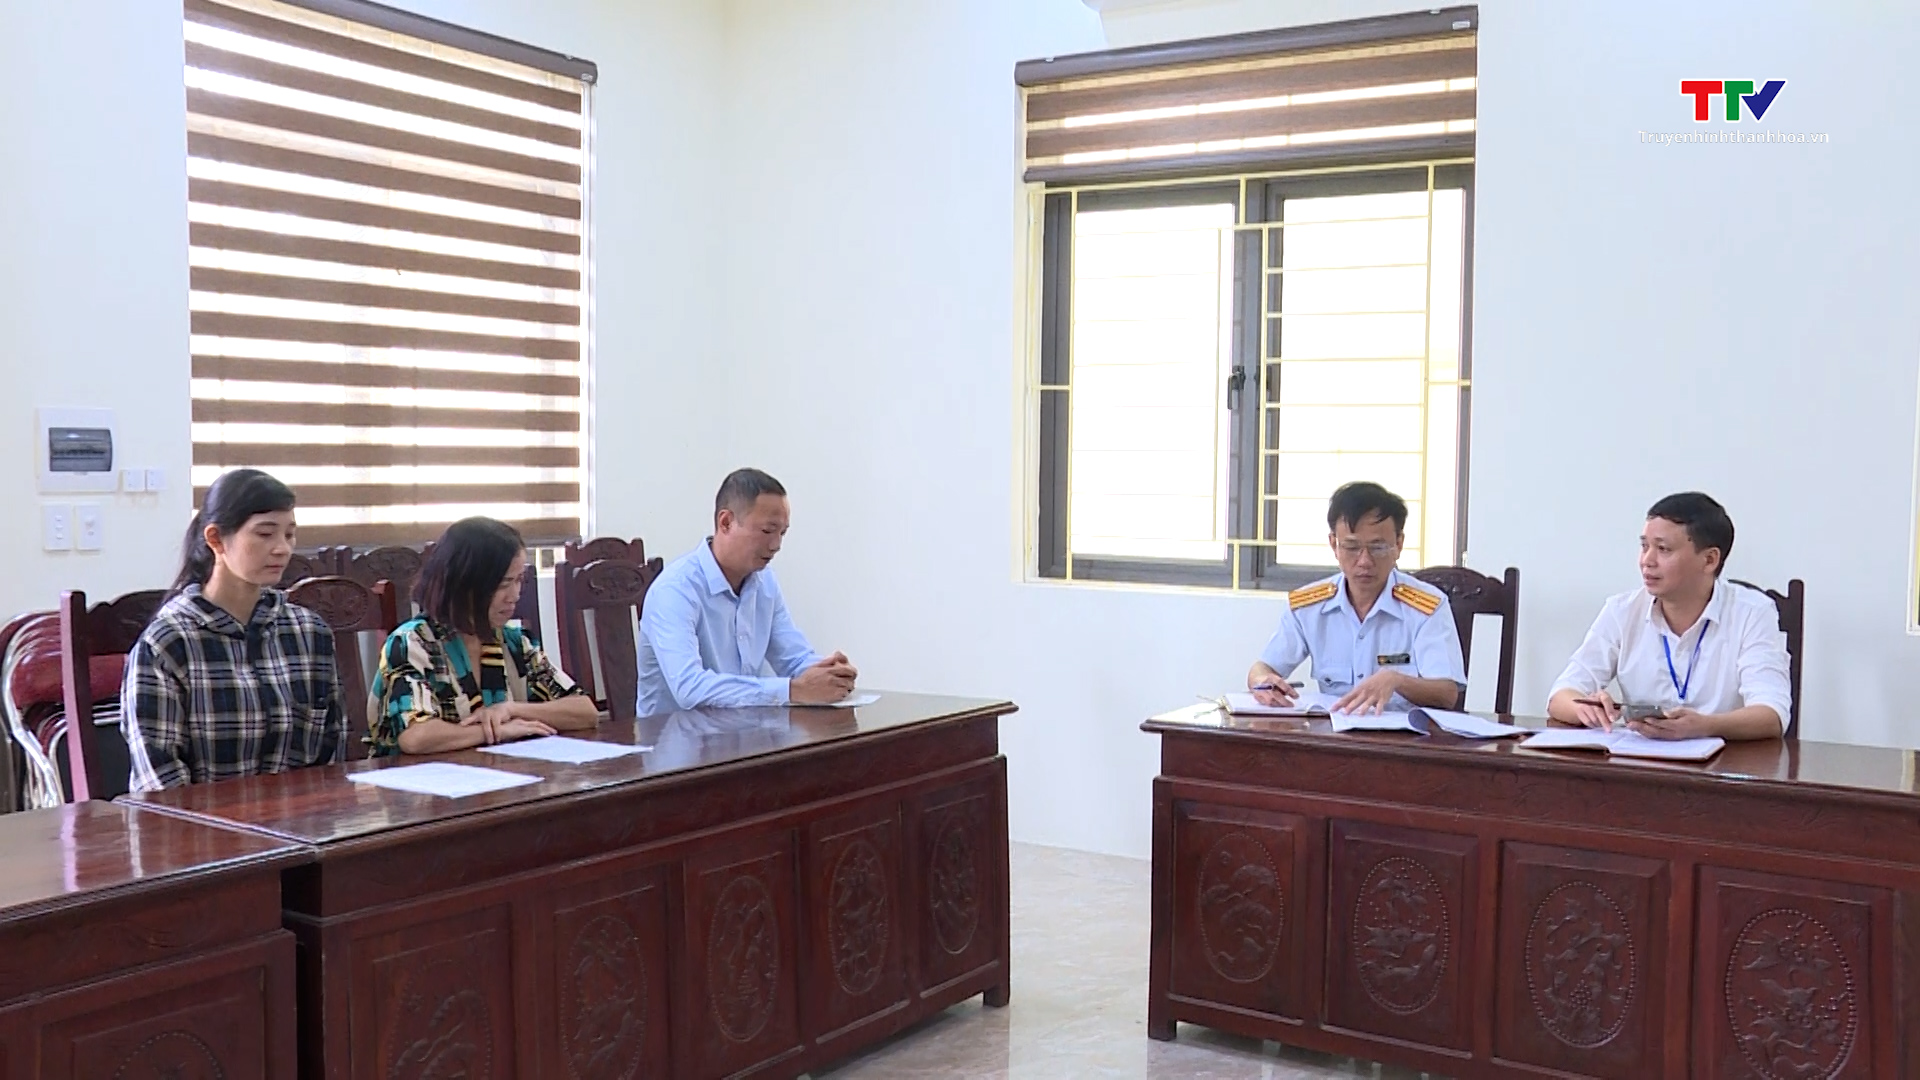 Huyện Triệu Sơn tăng cường công tác thanh tra, giải quyết khiếu nại, tố cáo, ổn định tình hình  - Ảnh 5.